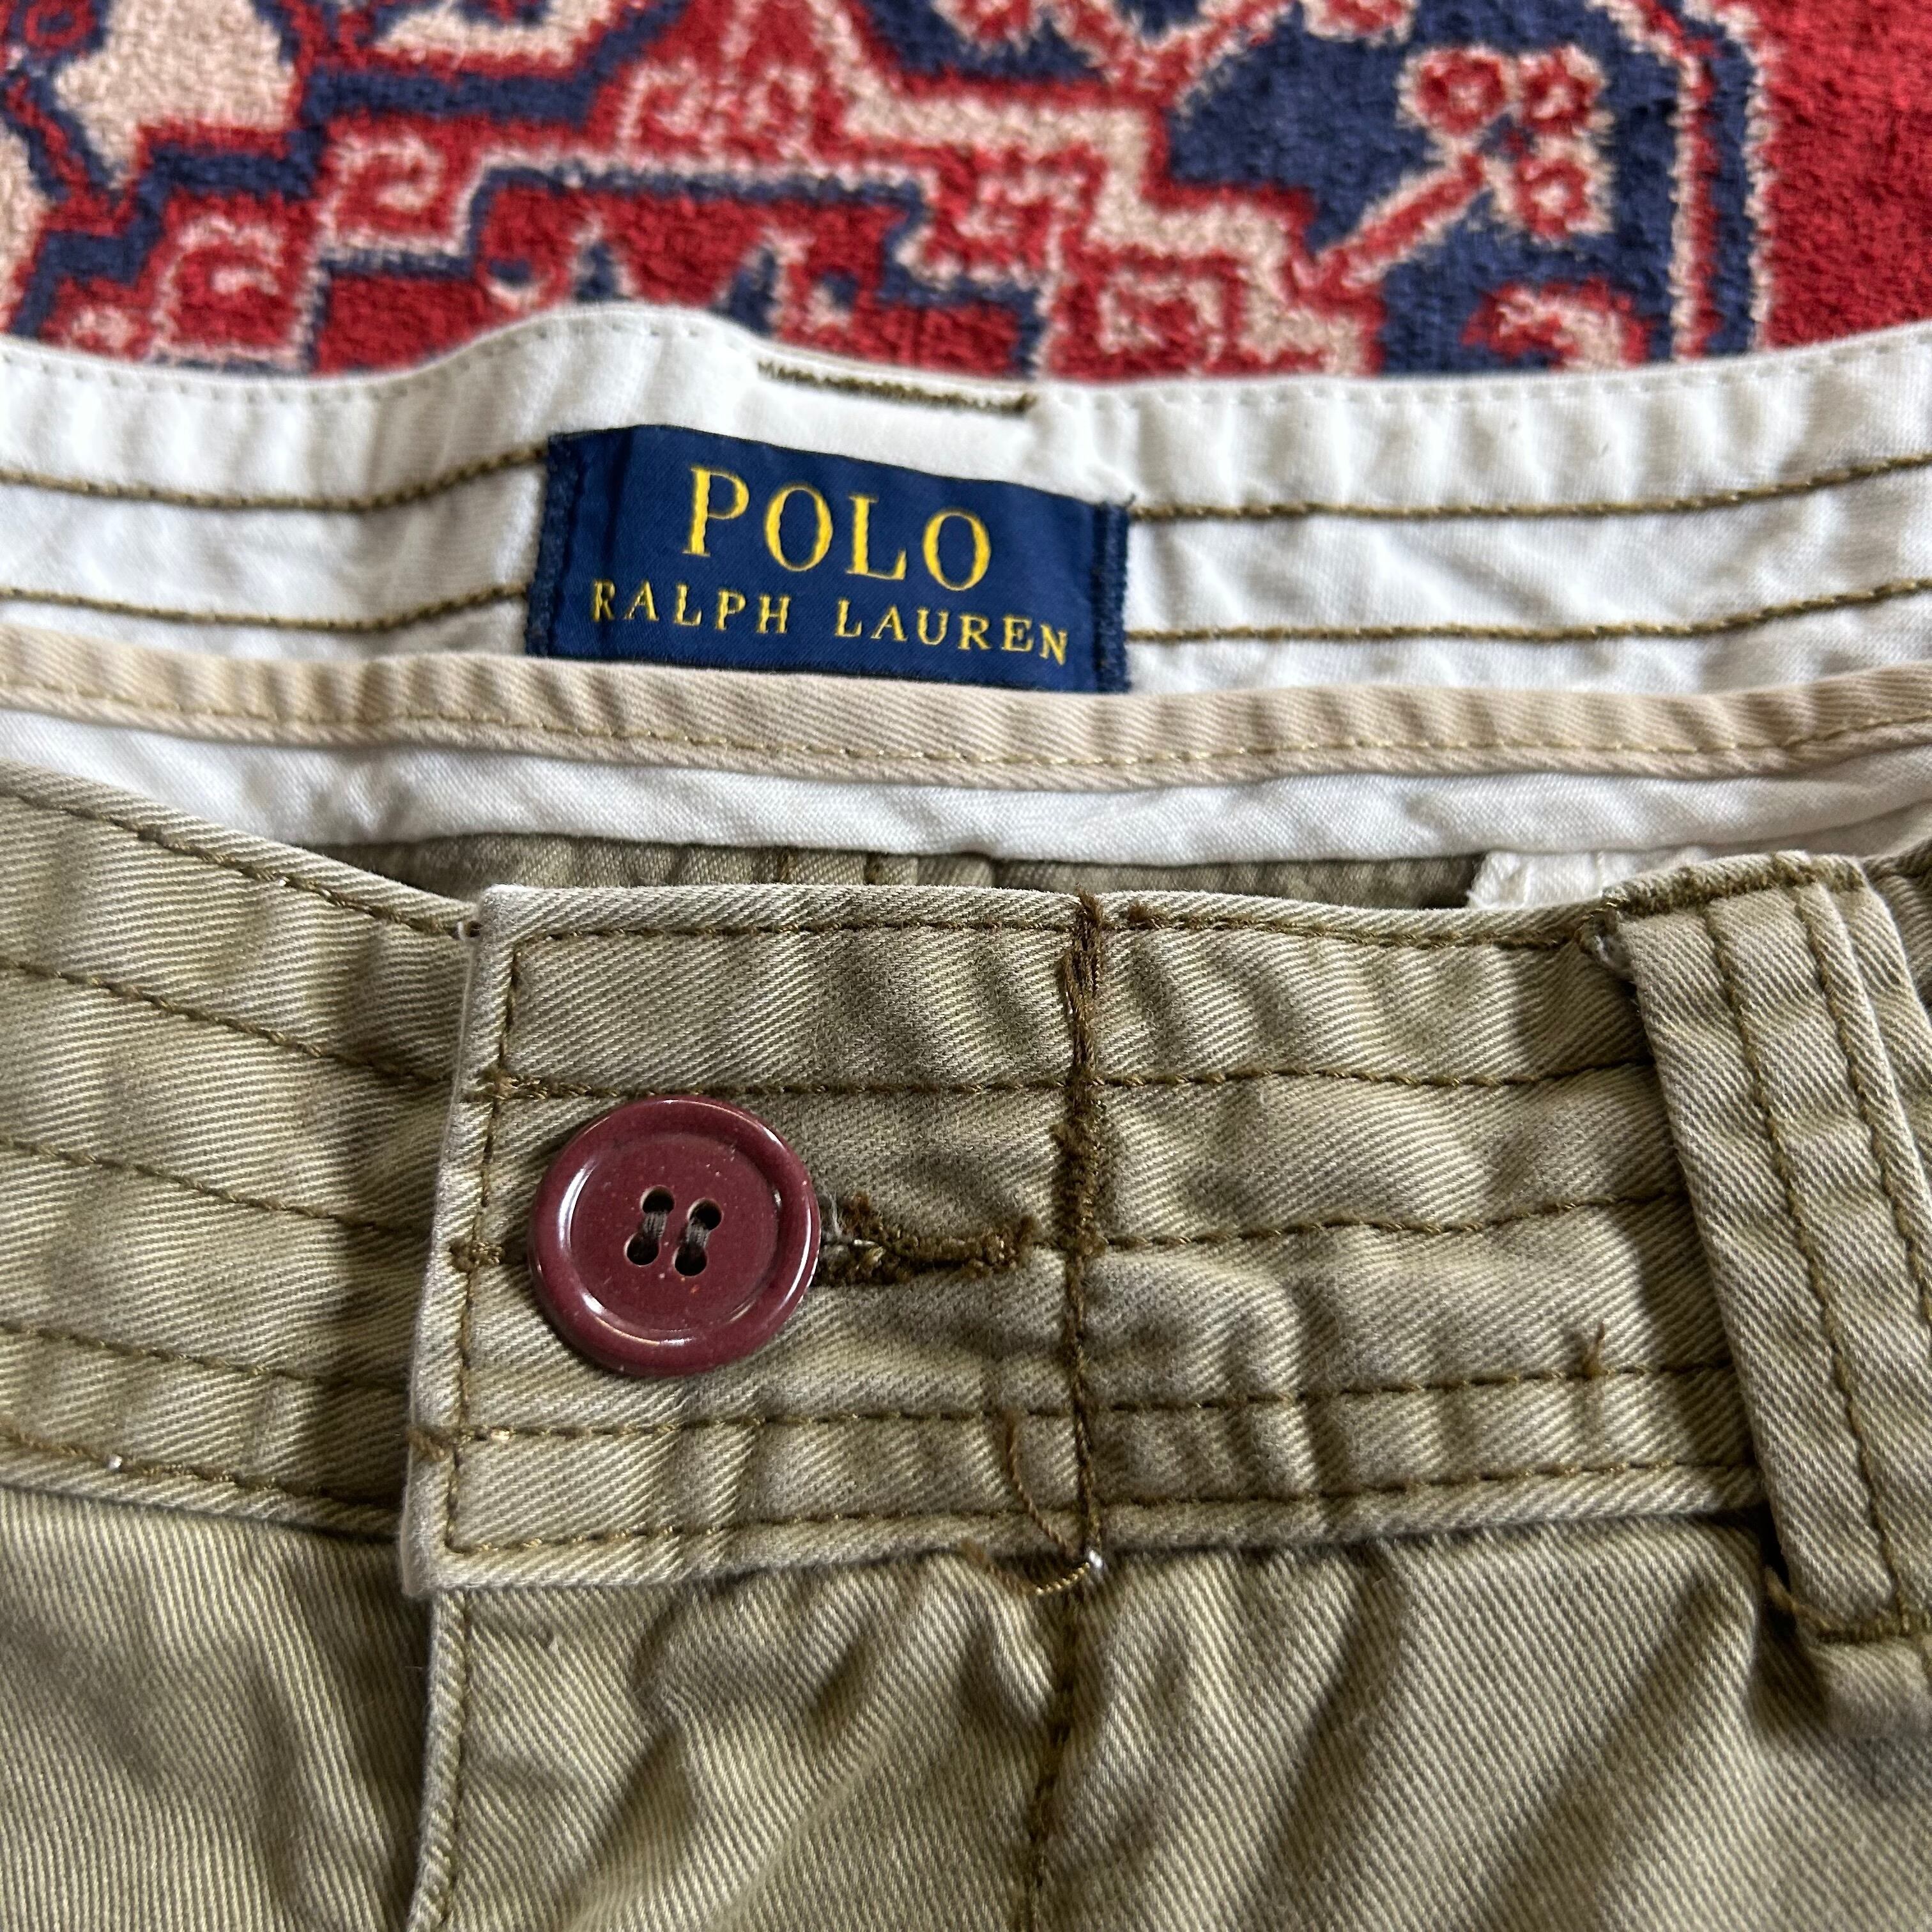 Polo Ralph Lauren cargo shorts W36 カーキ ラルフローレン カーゴショーツ ポロチノ #507007 kapre